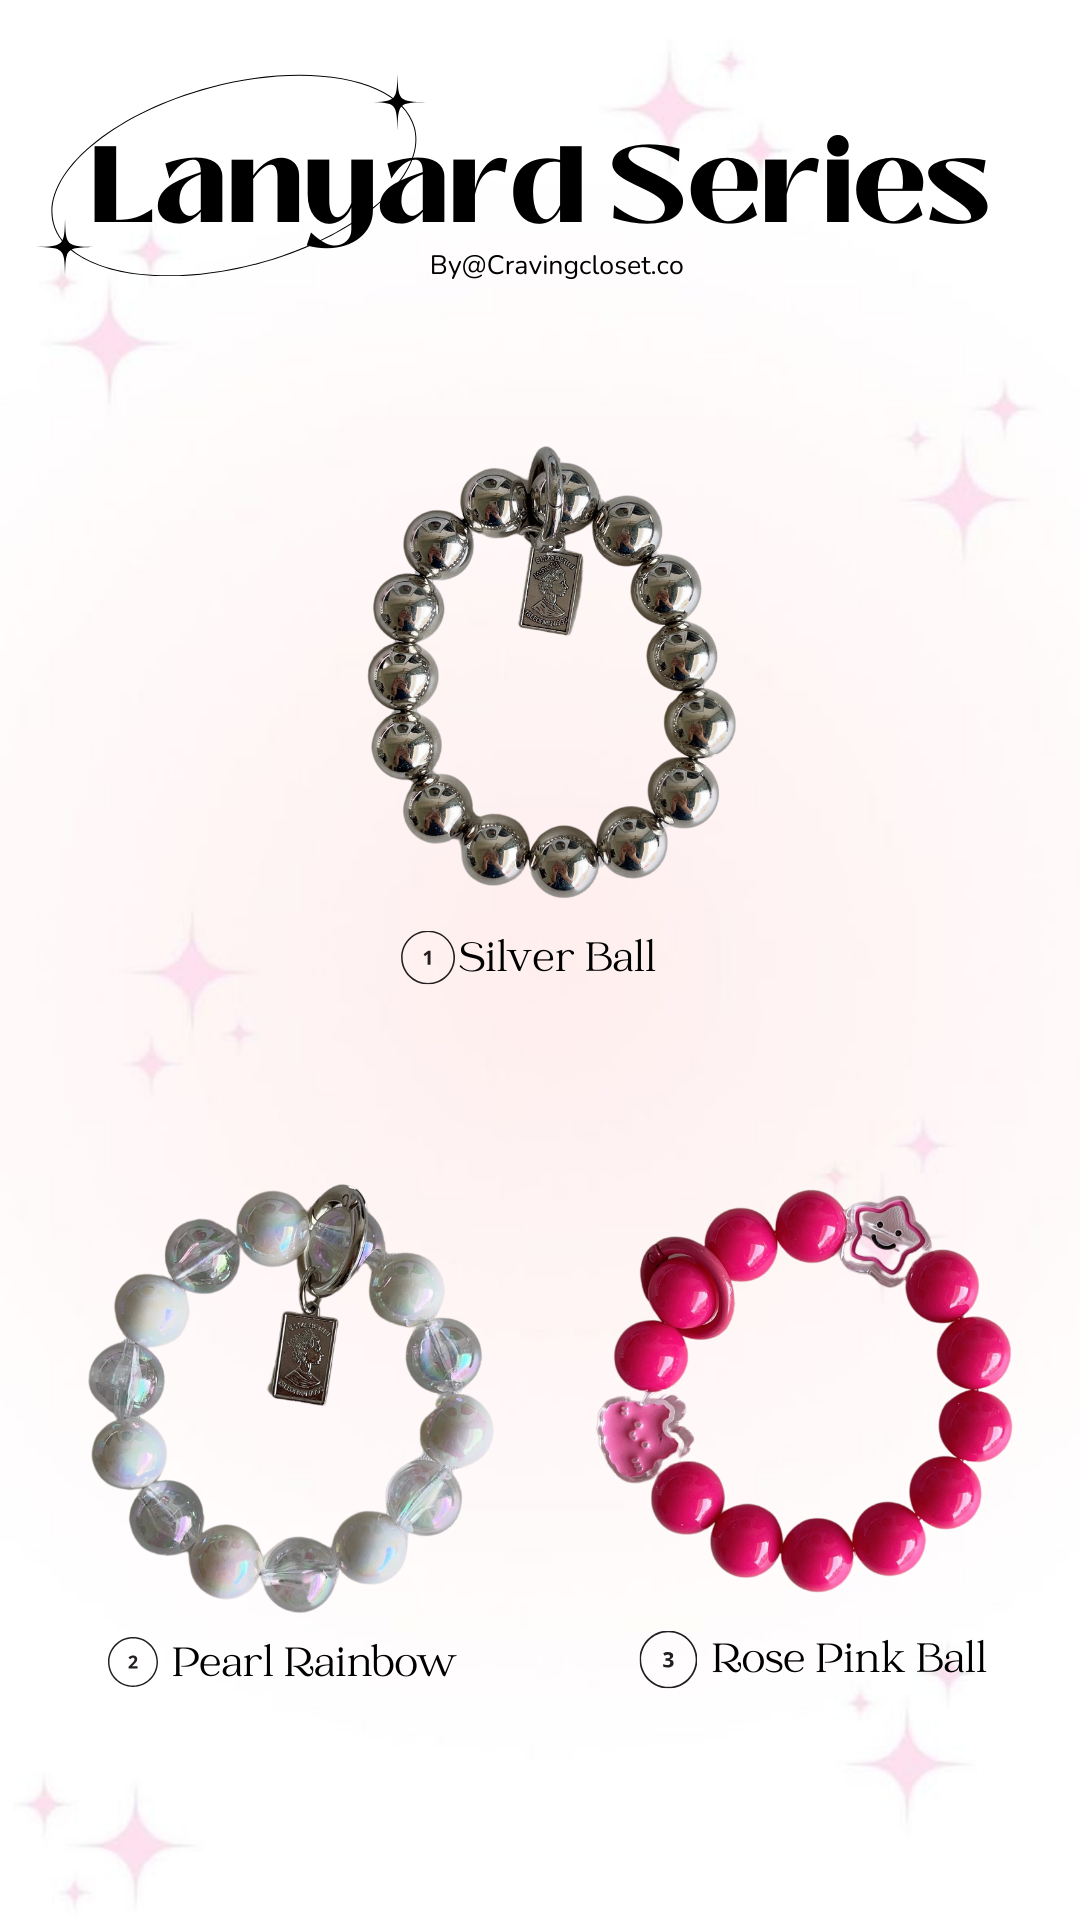 Silver Ball - 1